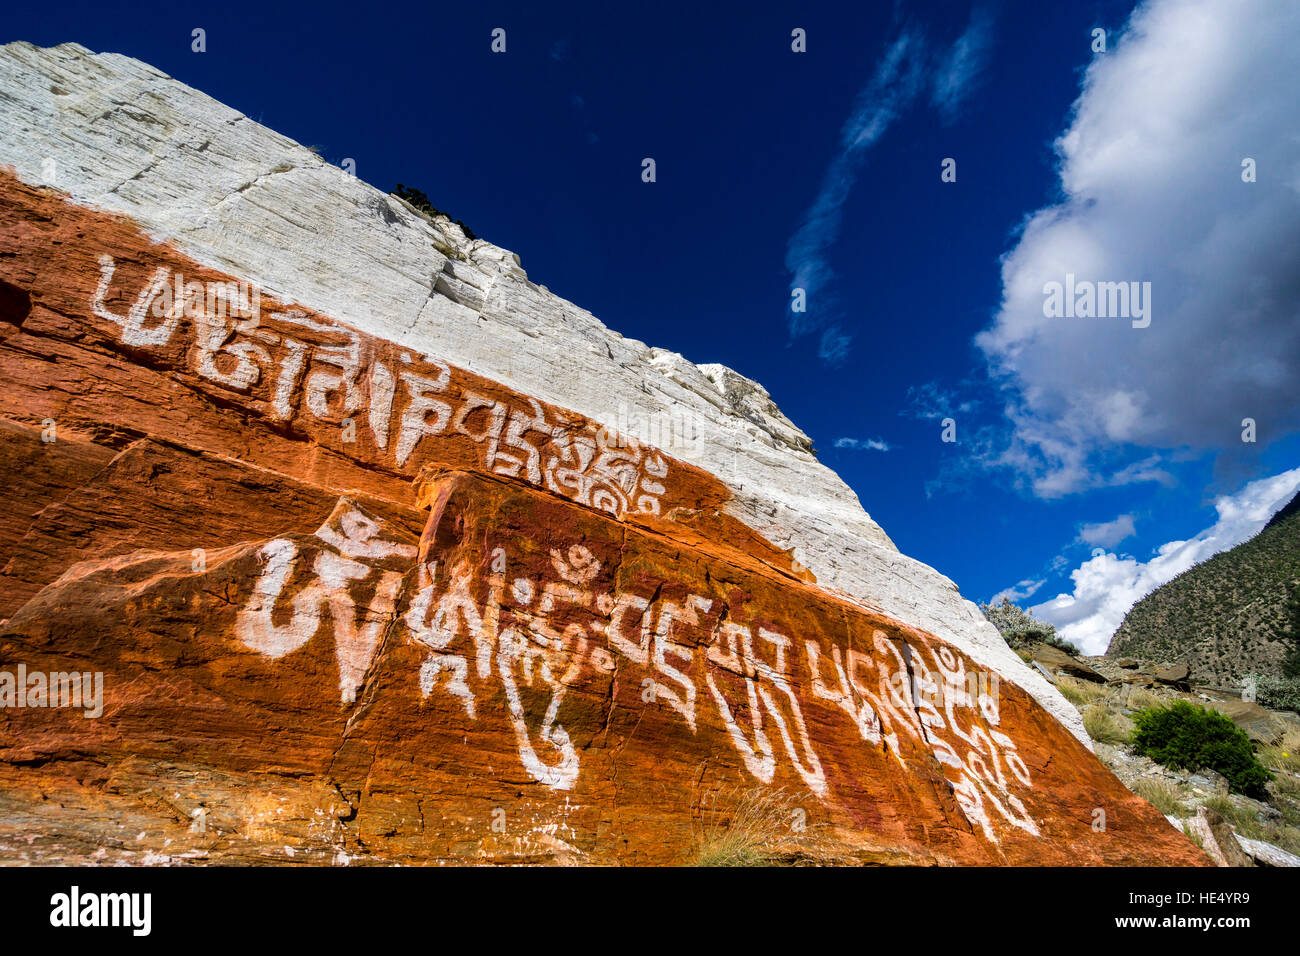 Una roccia sopra il villaggio è dipinto di rosso e bianco con alcune scritture tibetano per motivi religiosi Foto Stock